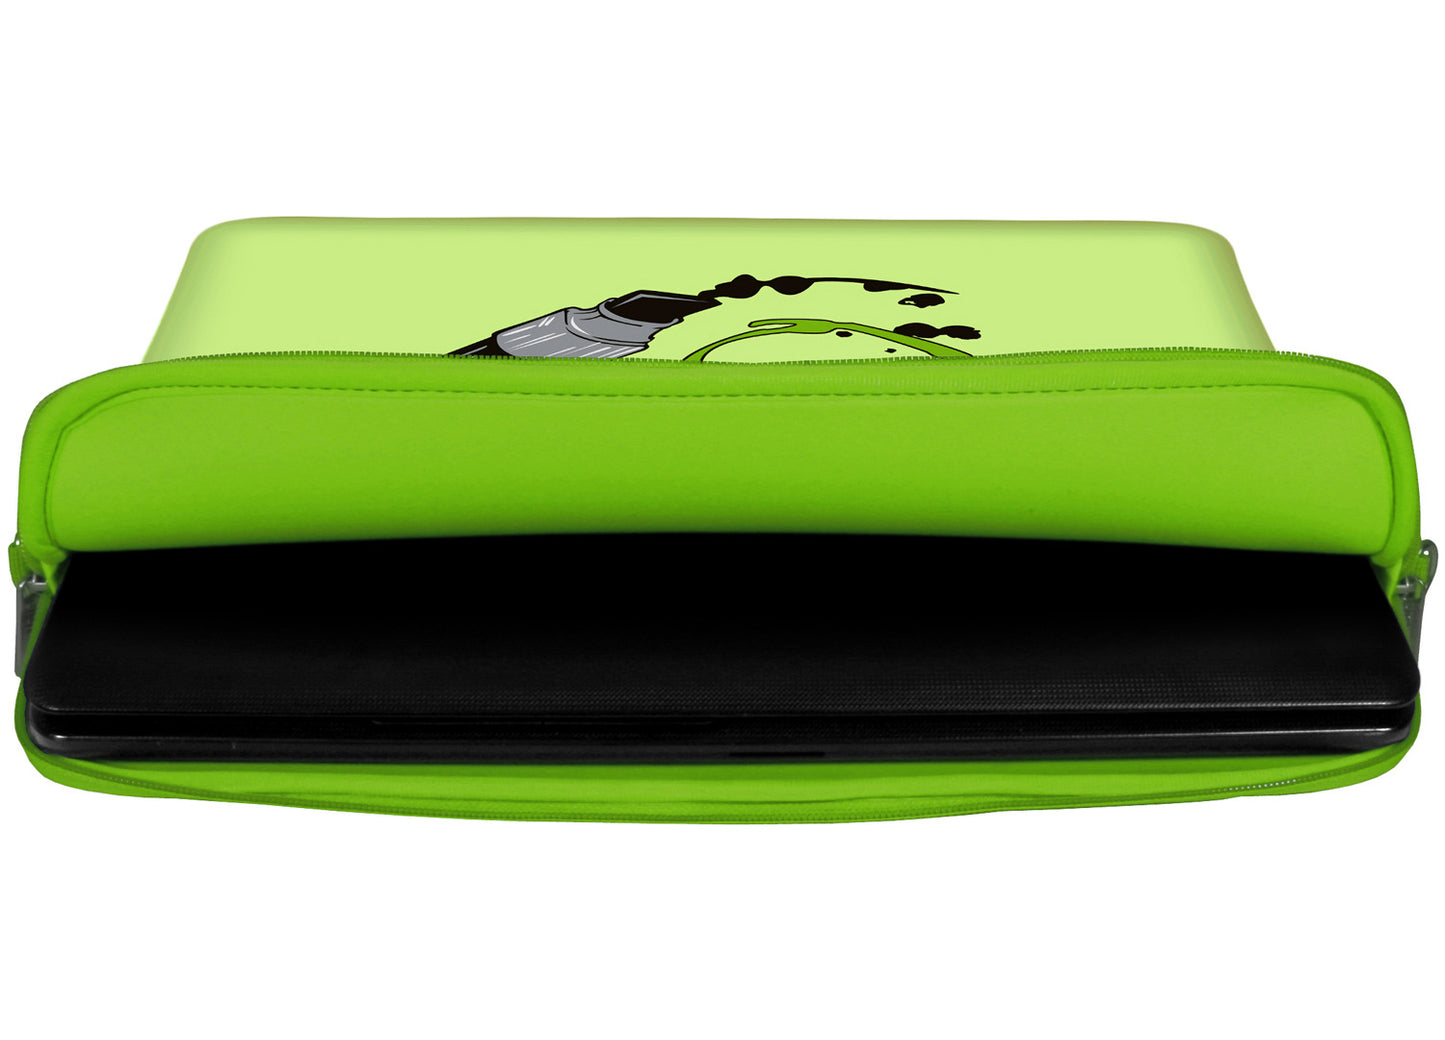 Innenansicht mit Schutzlippen der LS164 Apple Pen Designer Laptop Tasche in grün aus wasserabweisendem Neopren